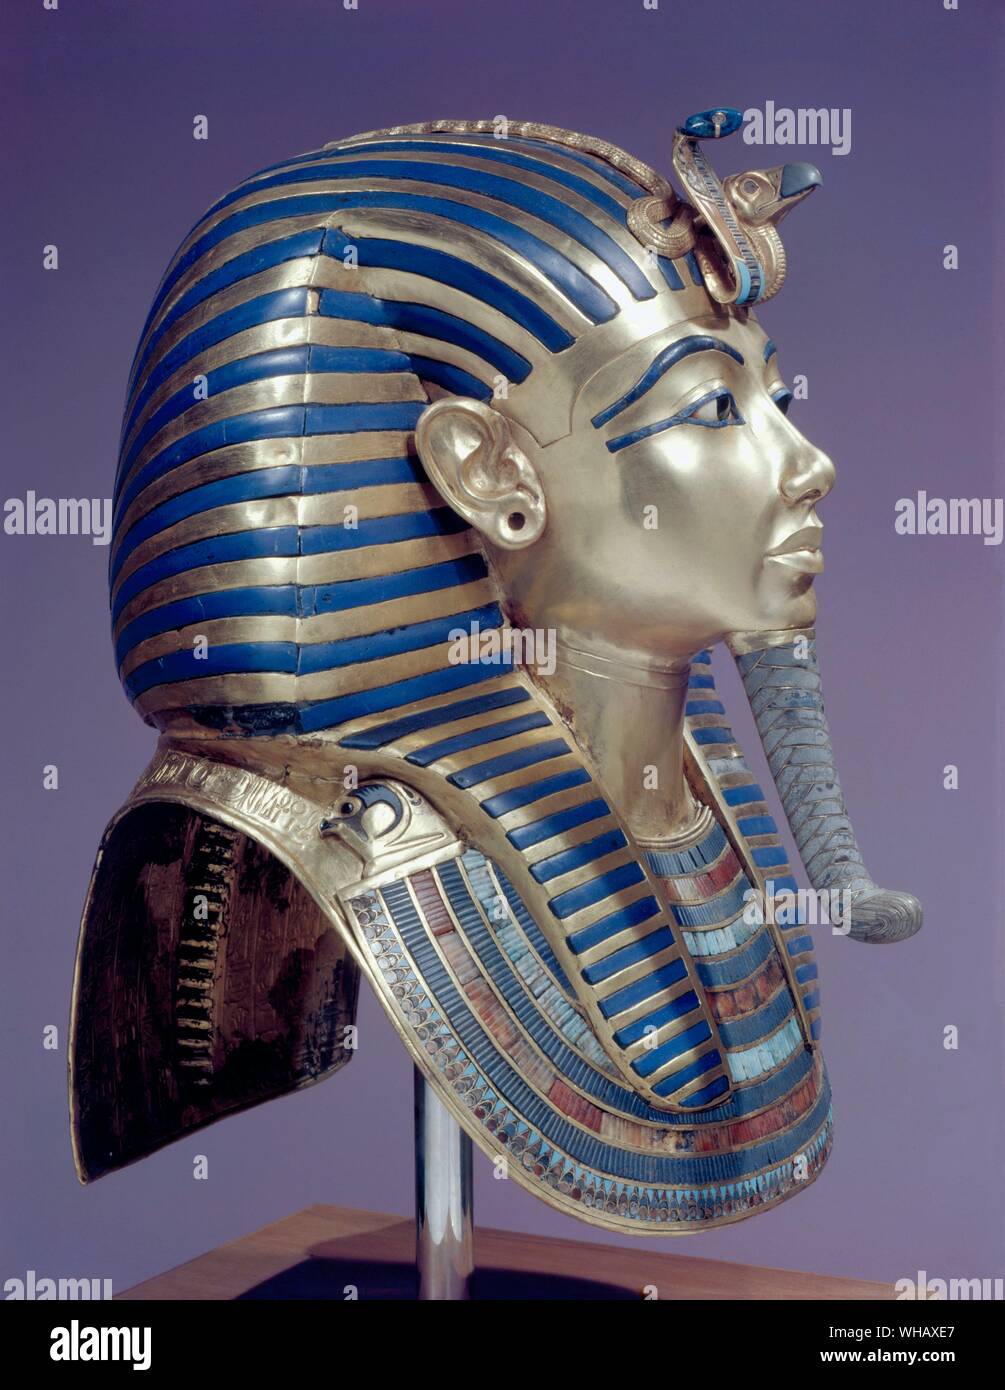 Tutankhamon - Tut Pl. 26 (XXVI) oro maschera (trovato da Howard Carter) Tutankhamon la maschera funeraria in oro massiccio, intarsiato con pietre semipreziose e pasta di vetro. Tukankhamen, da Christiane Desroches Noblecourt, la maschera di Tutankhamon della mummia è ora una famosa icona di Antico Egitto - close-up di Tutankhamun's caratteristiche facciali come rappresentato dal XVIII dinastia artigiani del giovane re della maschera di morte. L egittologo Howard Carter (impiegato da Lord Carnarvon) scoperto Tutankhamon la tomba (poiché designato KV62) nella Valle dei Re il 4 novembre 1922 vicino all'ingresso della tomba di Foto Stock